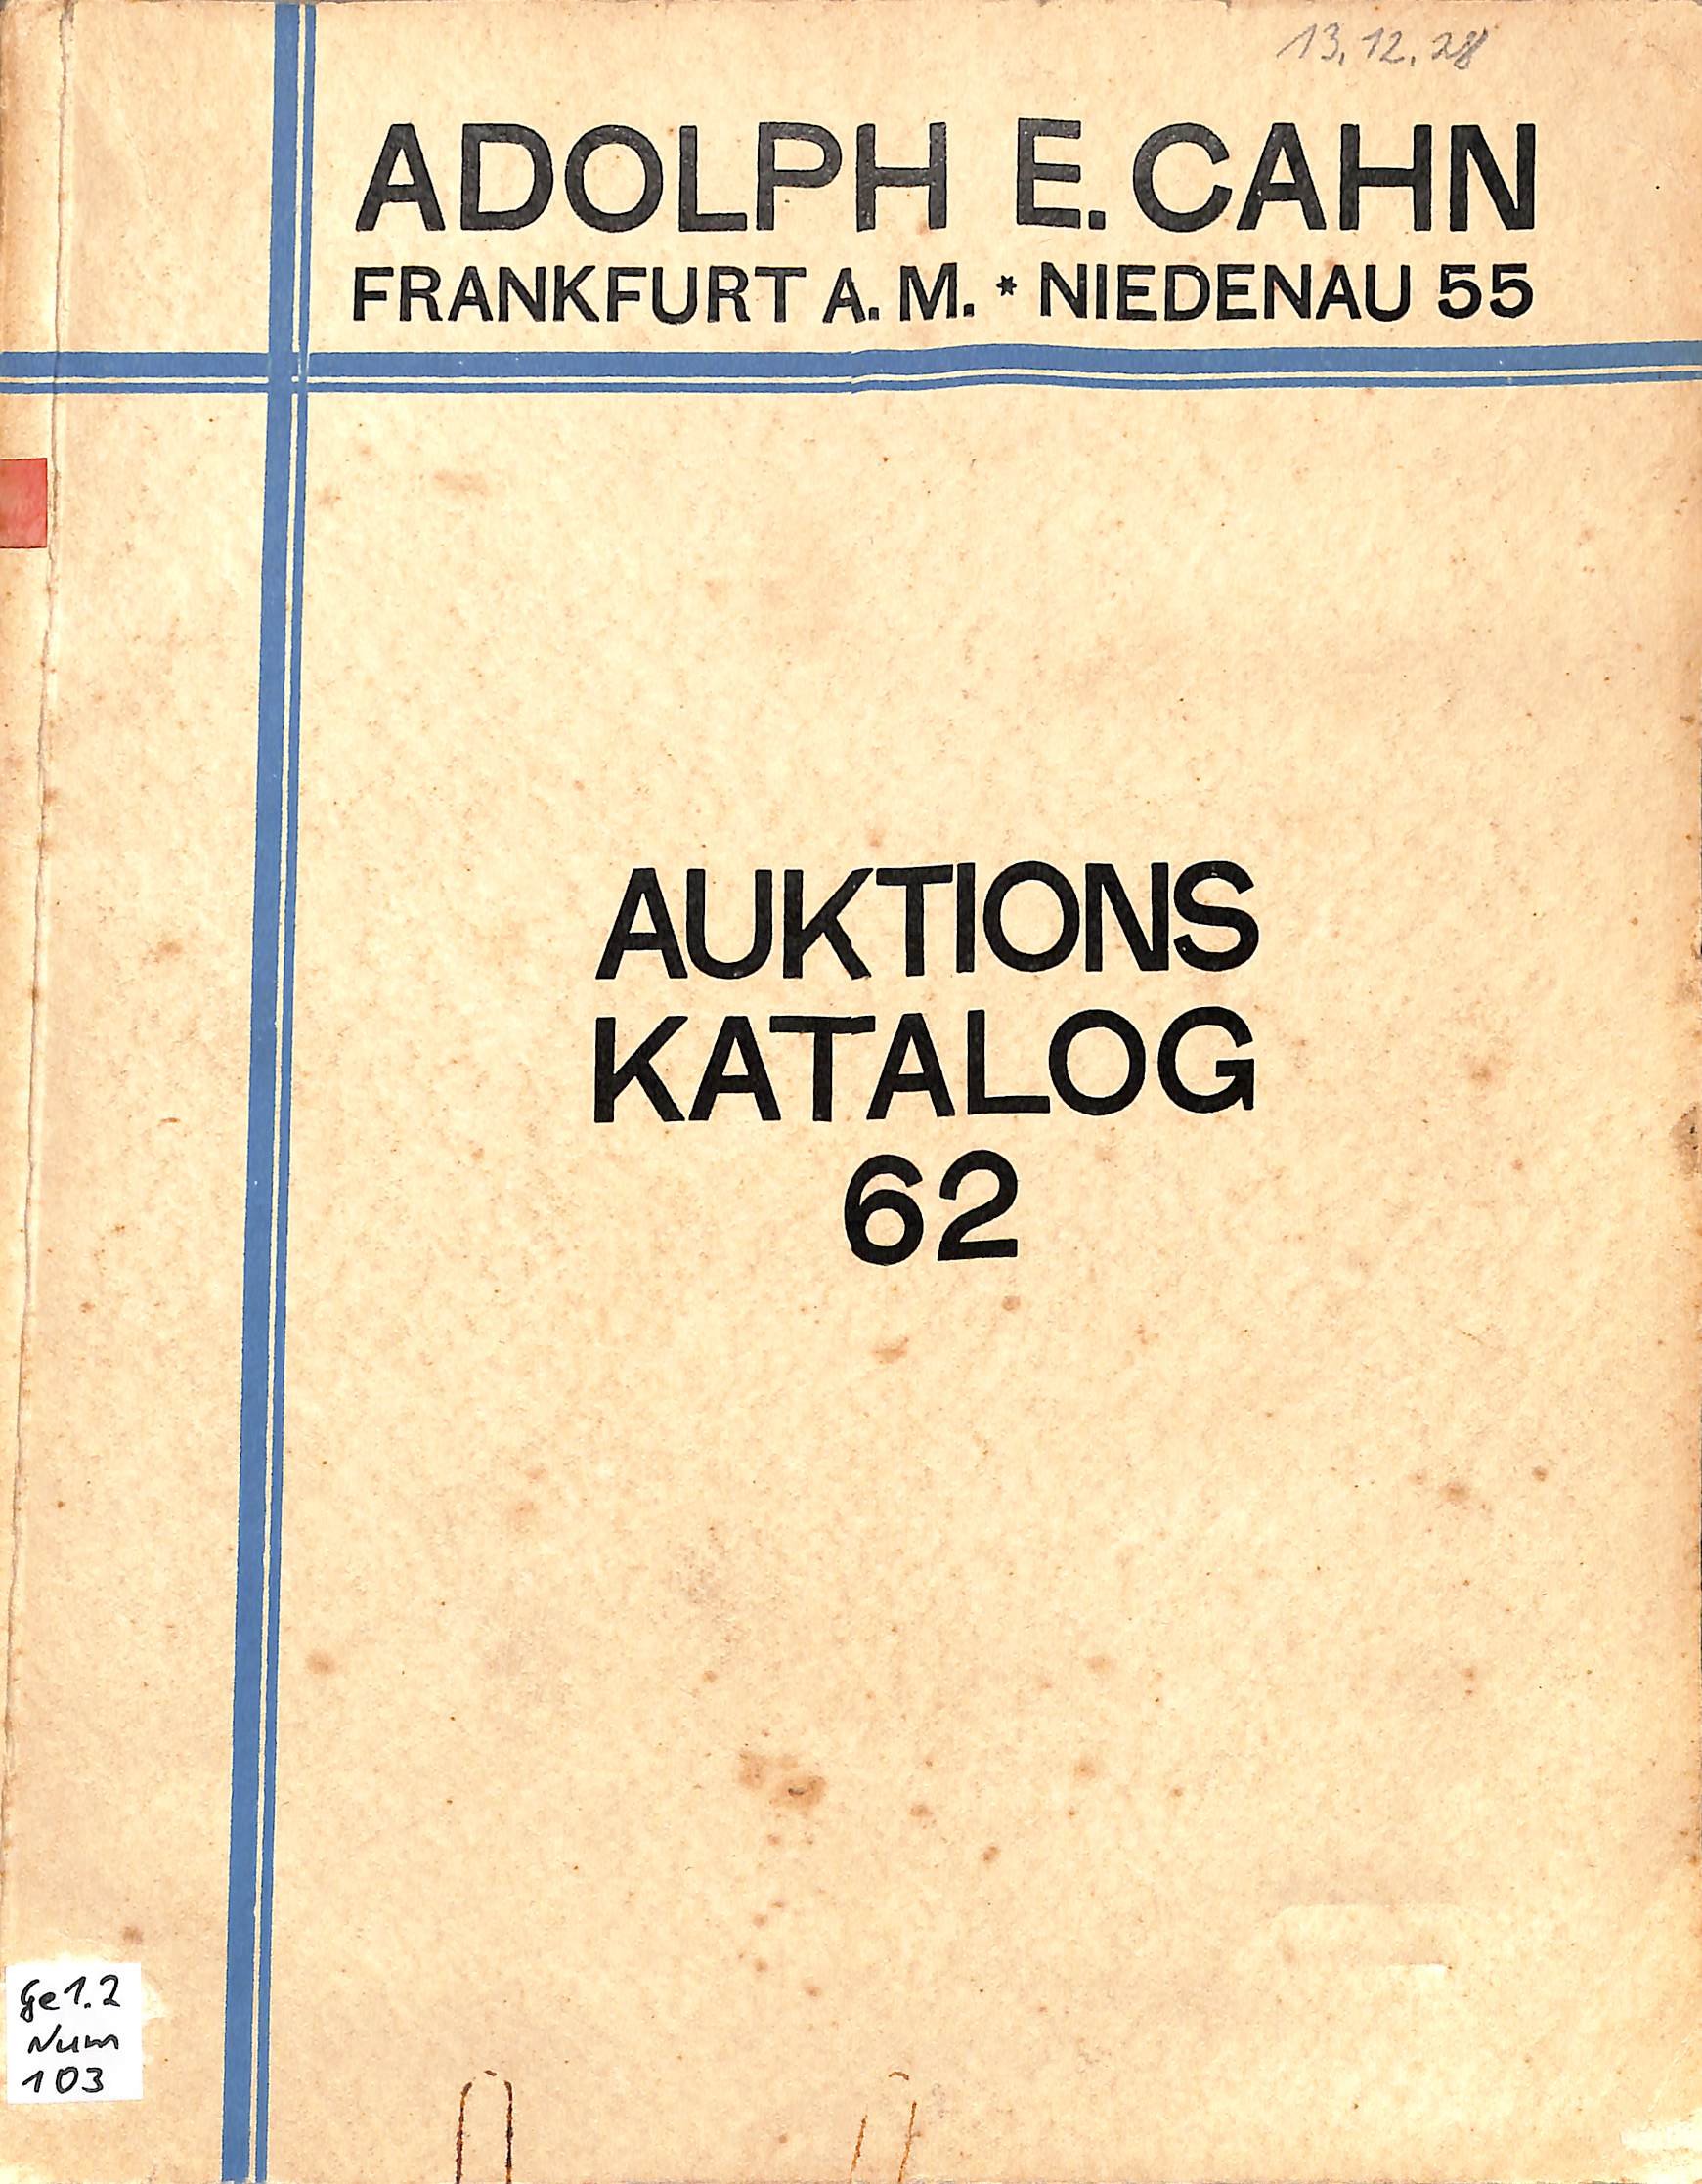 Adolph E. Cahn, Versteigerungs-Katalog No. 62, 1928 (Heimatwelten Zwönitz CC BY-NC-SA)